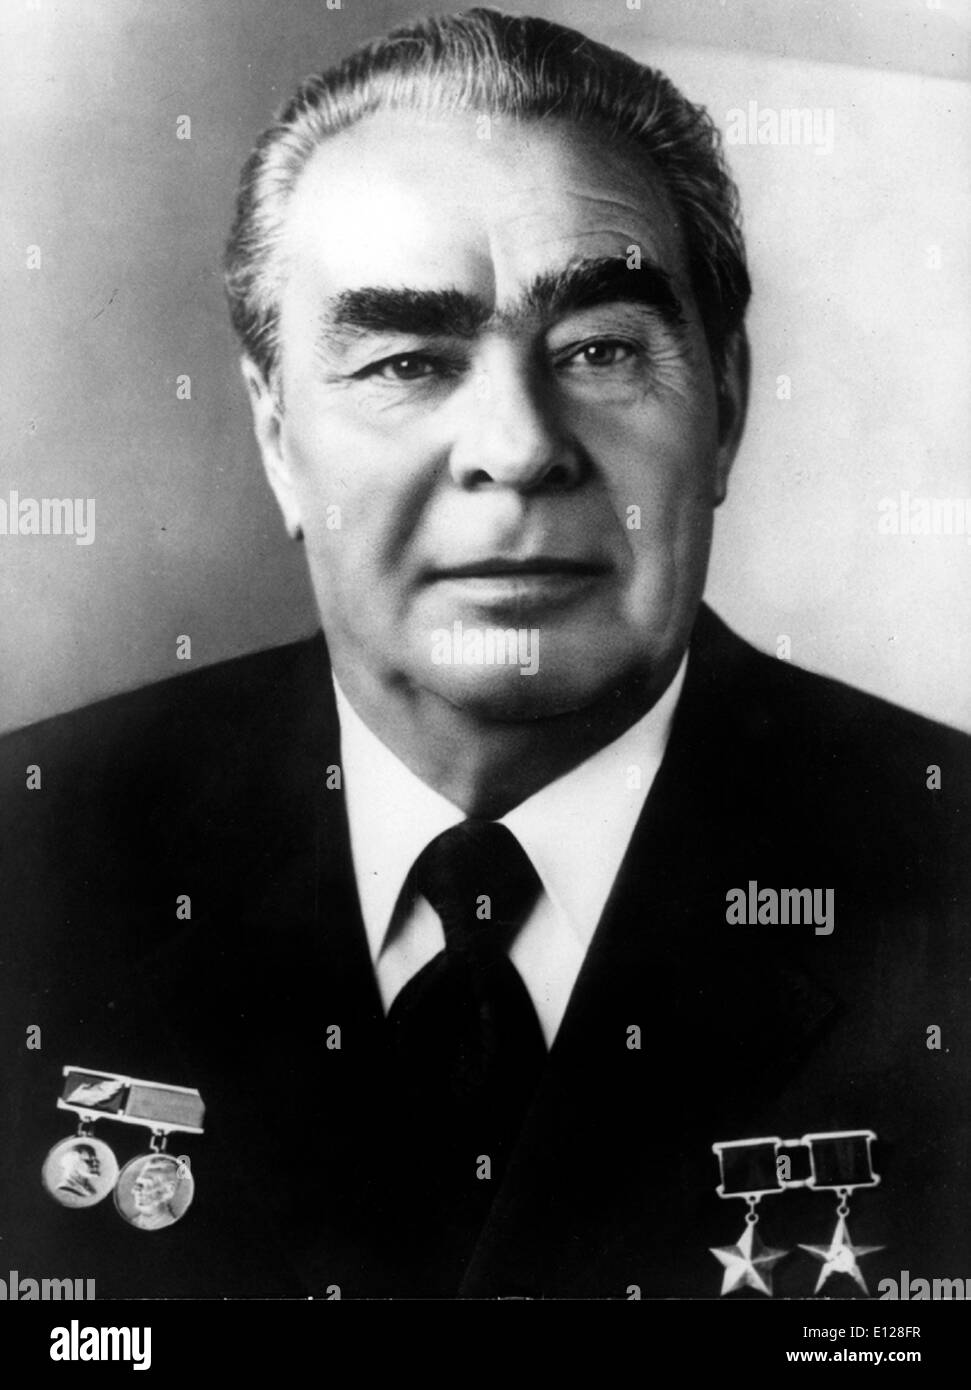 01 Apr, 2009 - Londres, Inglaterra, Reino Unido - Leonid Brejnev. Leonid Ilich Brezhnev [O.S. 6 de diciembre de 1906] Ð 10 de noviembre de 1982) fue Secretario General del Partido Comunista de la Unión Soviética (y, por ende, líder político de la Unión Soviética) de 1964 a 1982, sirviendo en esa posición más tiempo que nadie distinto de J. Stalin. Fue dos veces Presidente del Presidium del Soviet Supremo (jefe de estado), a partir del 7 de mayo de 1960 a 15 de julio de 1964 y de 16 de junio de 1977 hasta su muerte el 10 de noviembre de 1982. (Crédito de la imagen: imágenes de KEYSTONE USA/ZUMAPRESS.com) Foto de stock